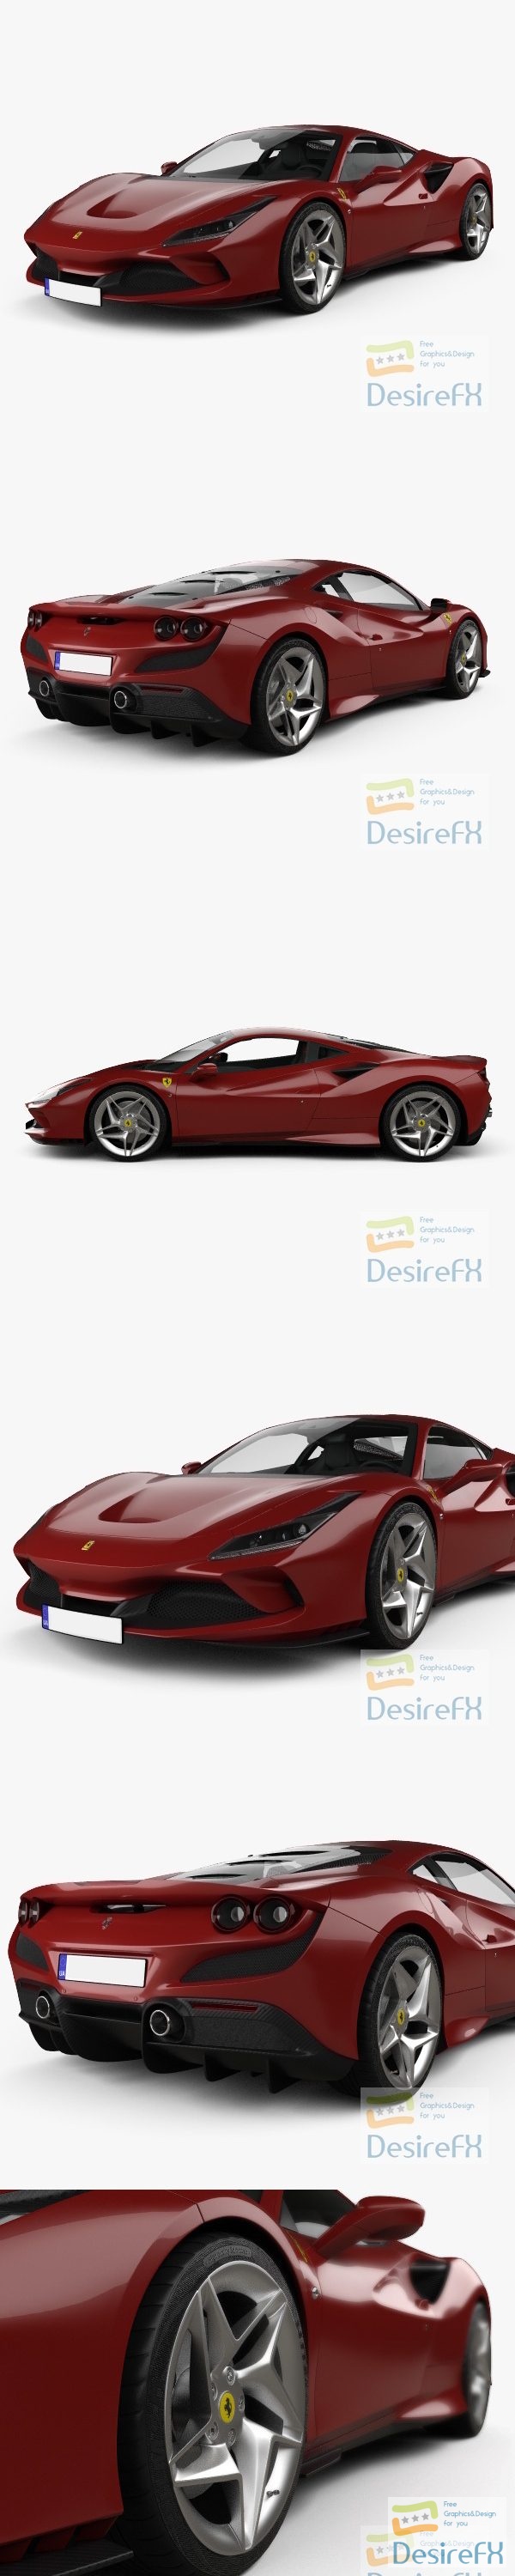 Ferrari F8 Tributo with HQ interior 2019 3D Model